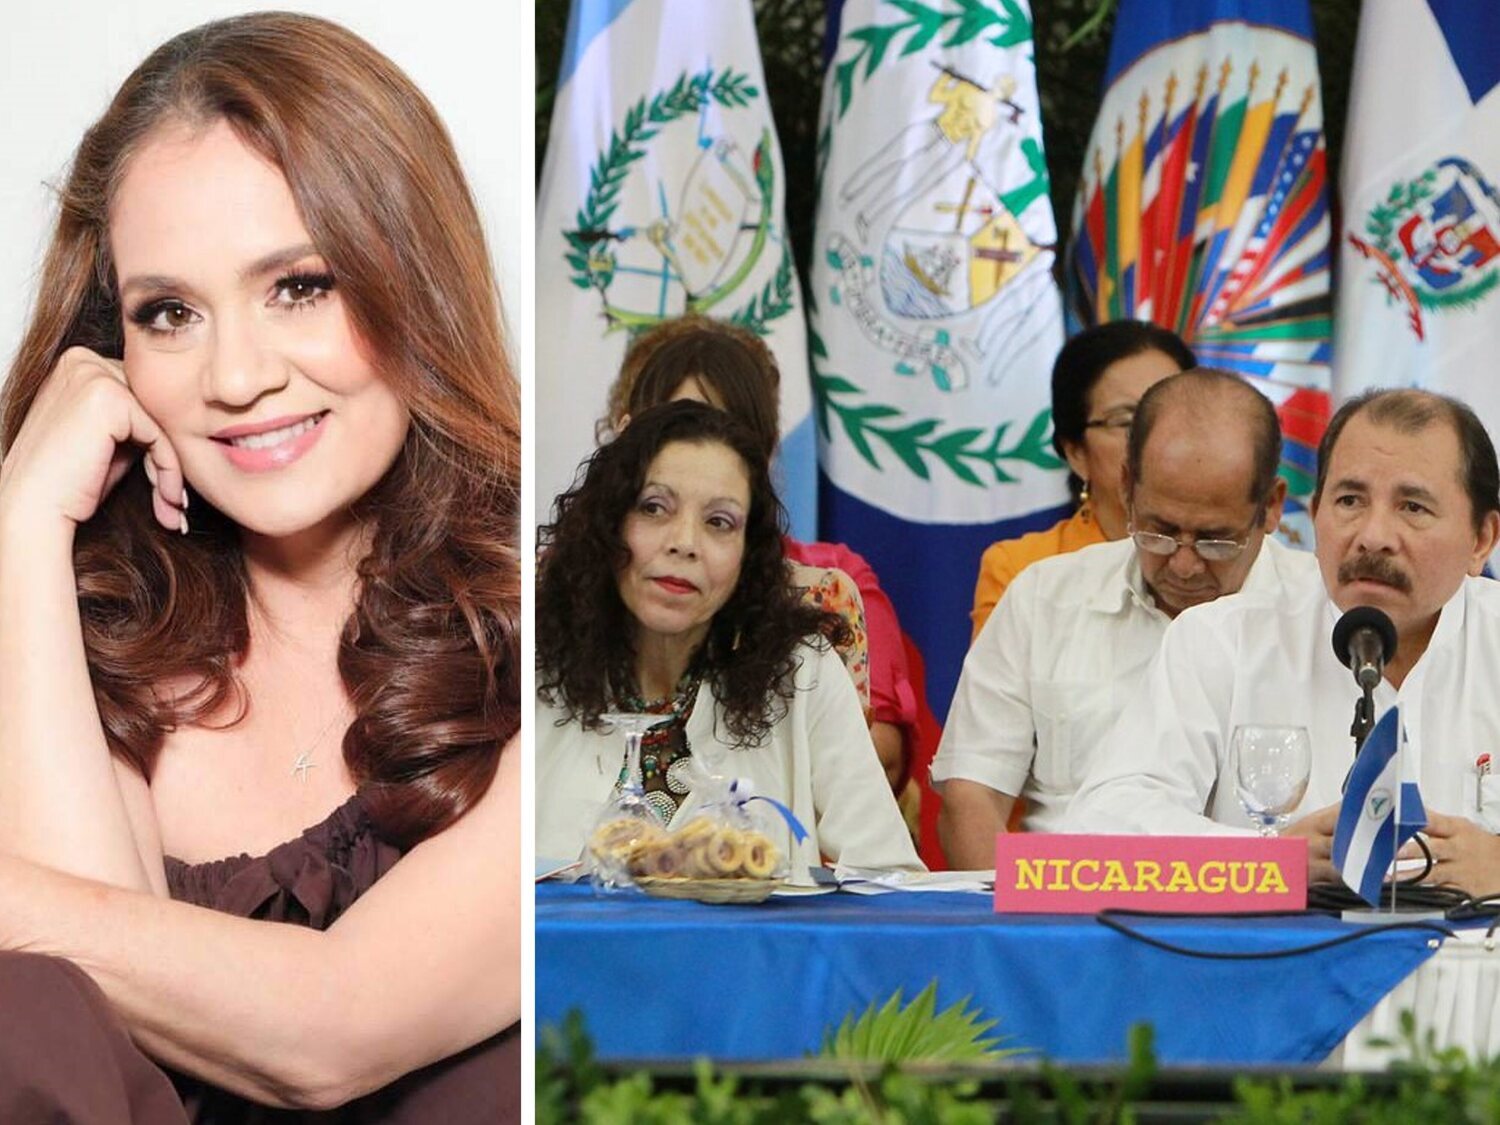 El régimen de Ortega y Murillo prohíbe entrar en Nicaragua a la directora de Miss Universo y la acusan de "terrorismo"